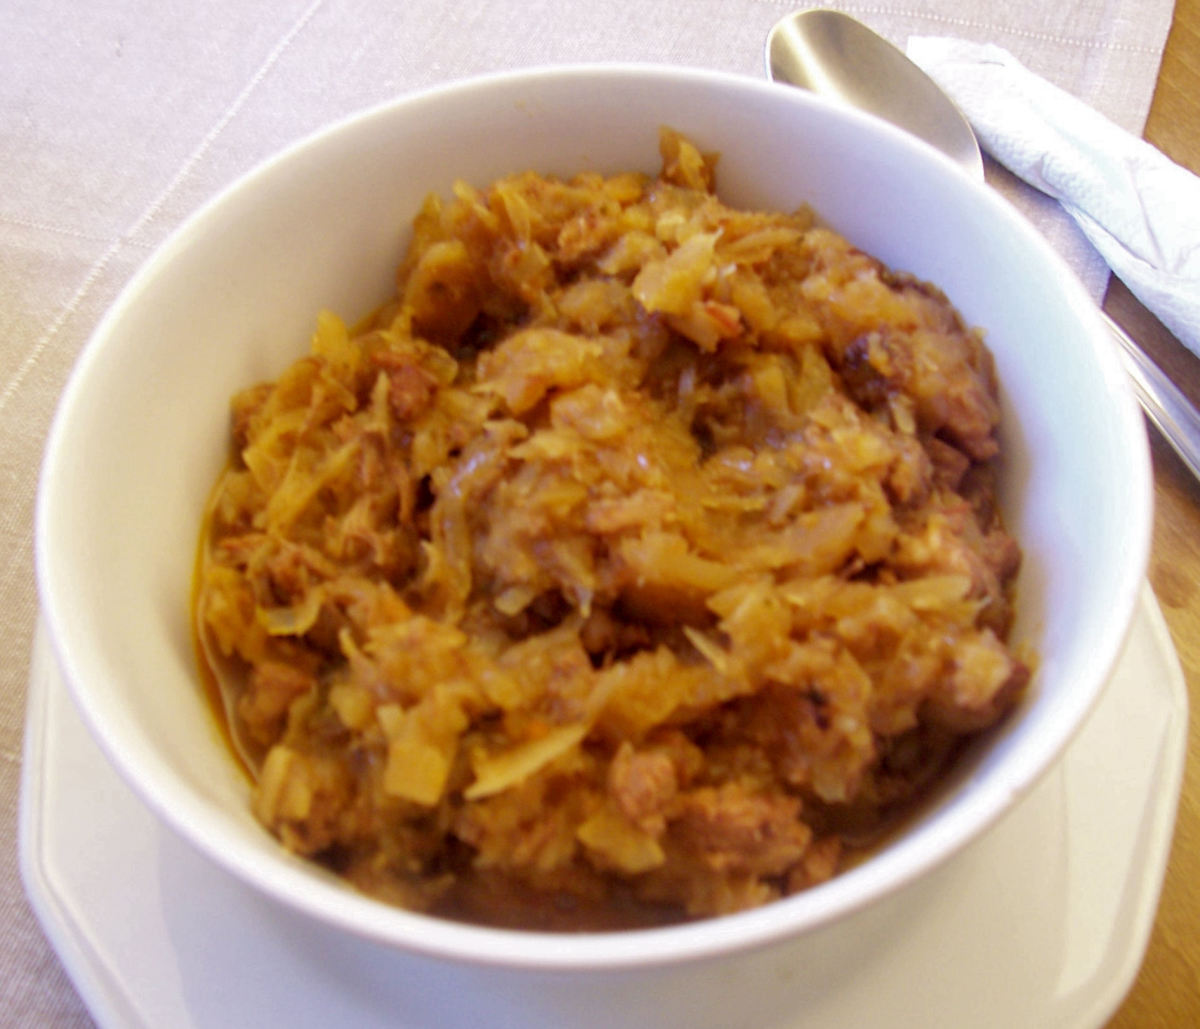 Hungarian Food - Transylvanian Layered Cabbage